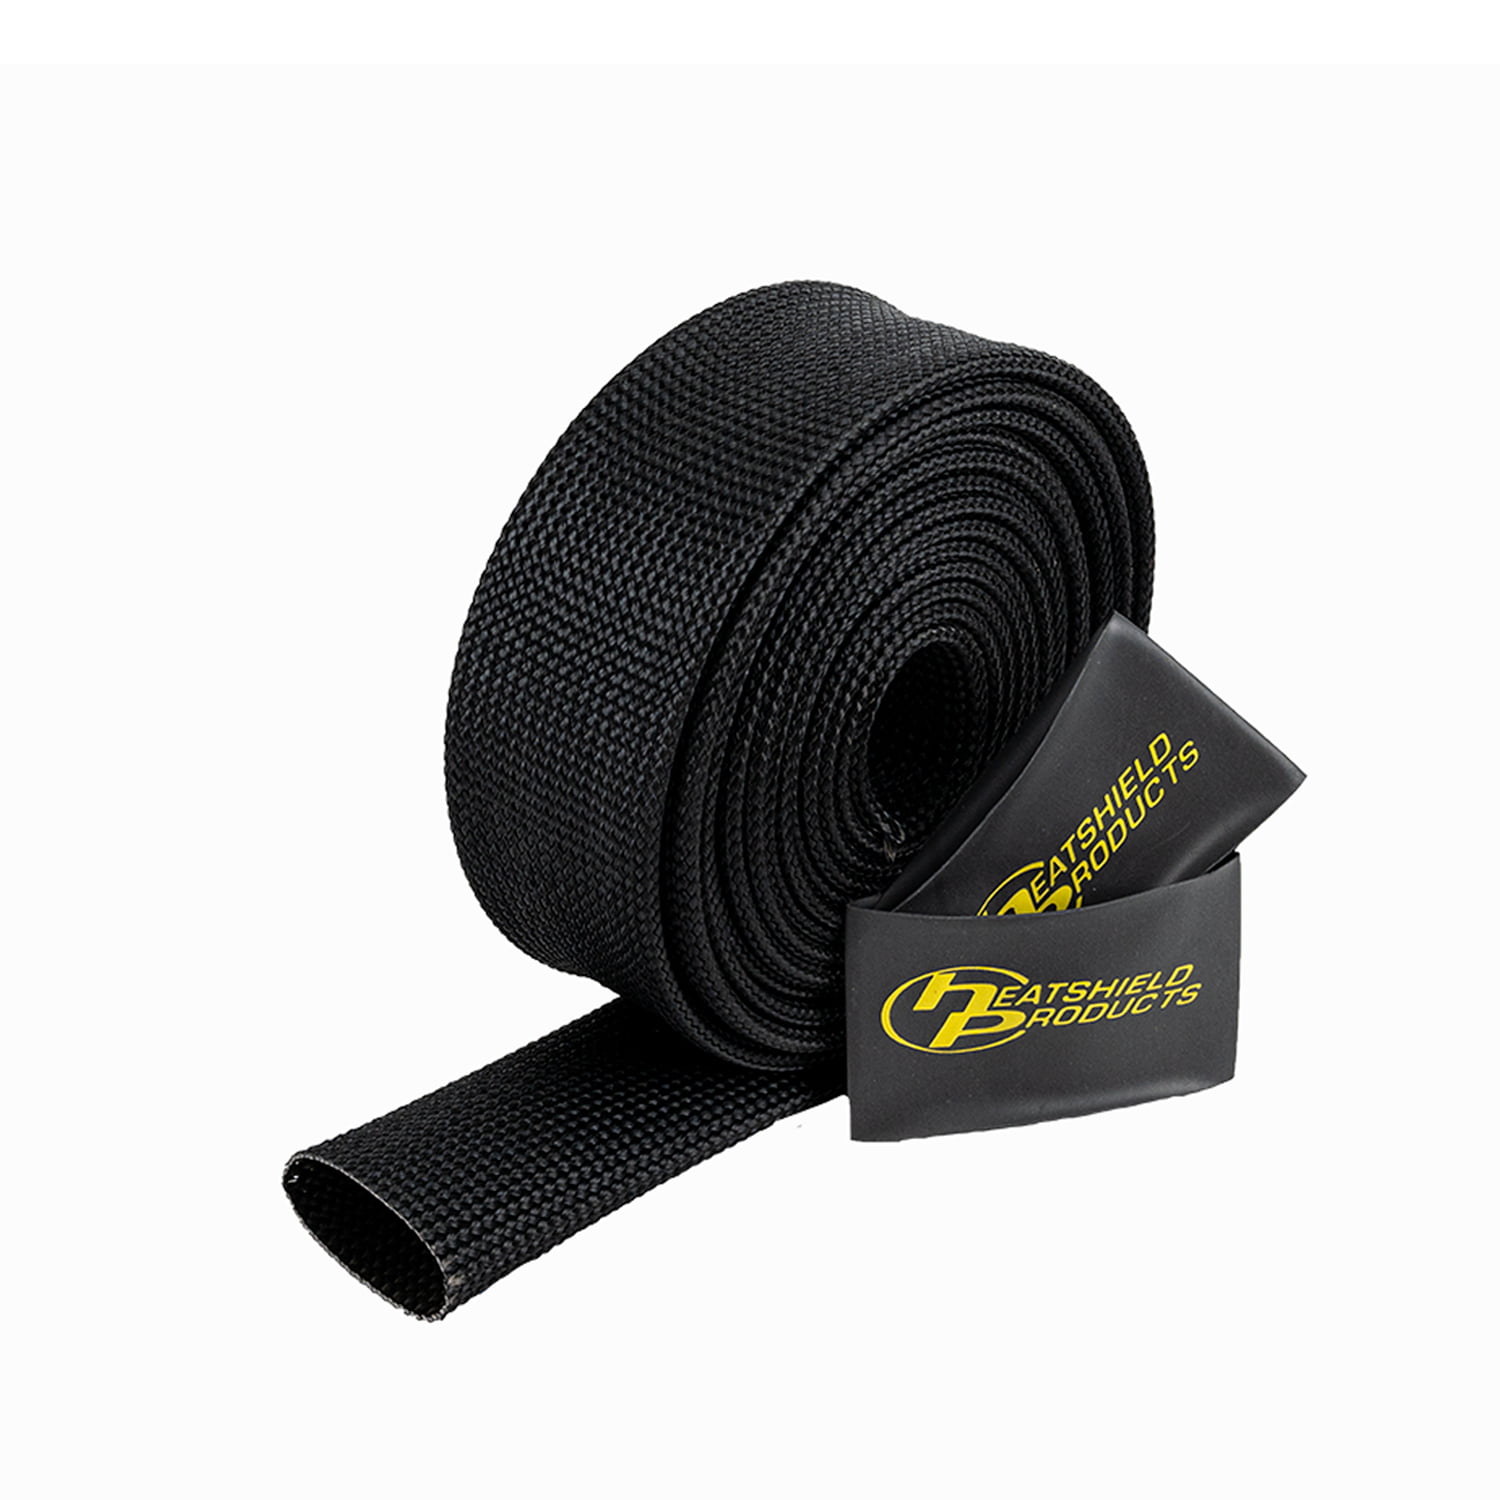 204018 Heatshield Products 1 ID x 10 Hot Rod Sleeve Roll 